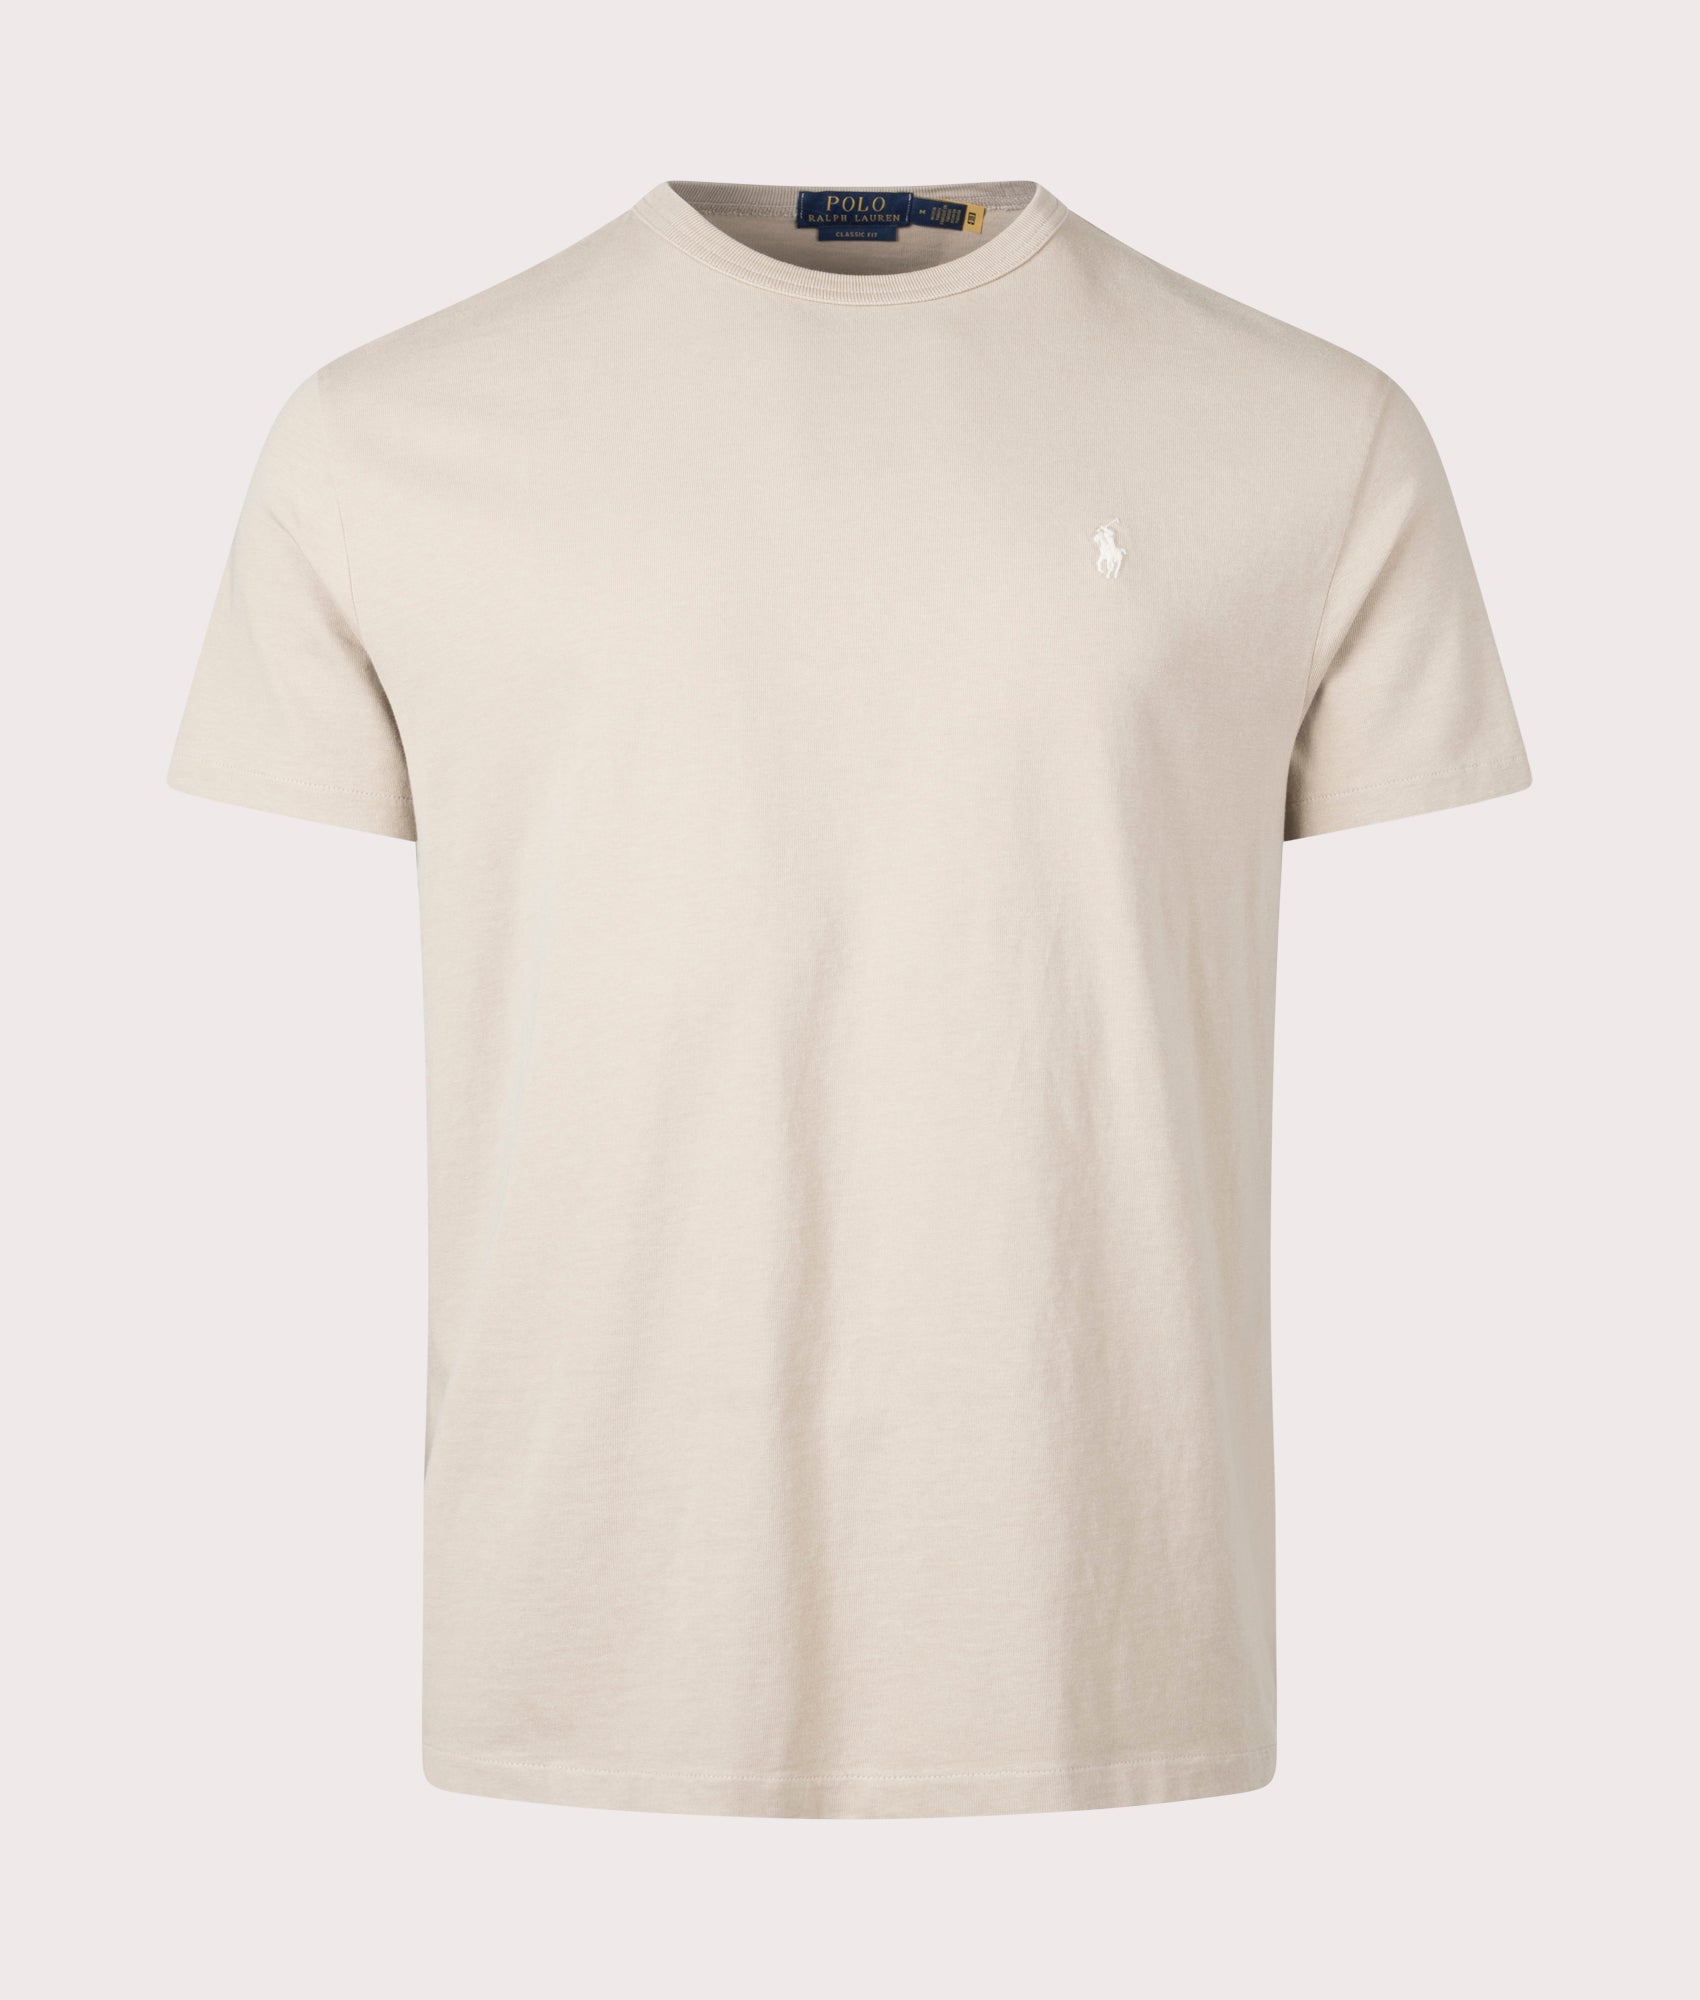 Polo Ralph Lauren Mens Classic Fit Jersey T-Shirt - Colour: 015 Coastal Beige - Size: Large